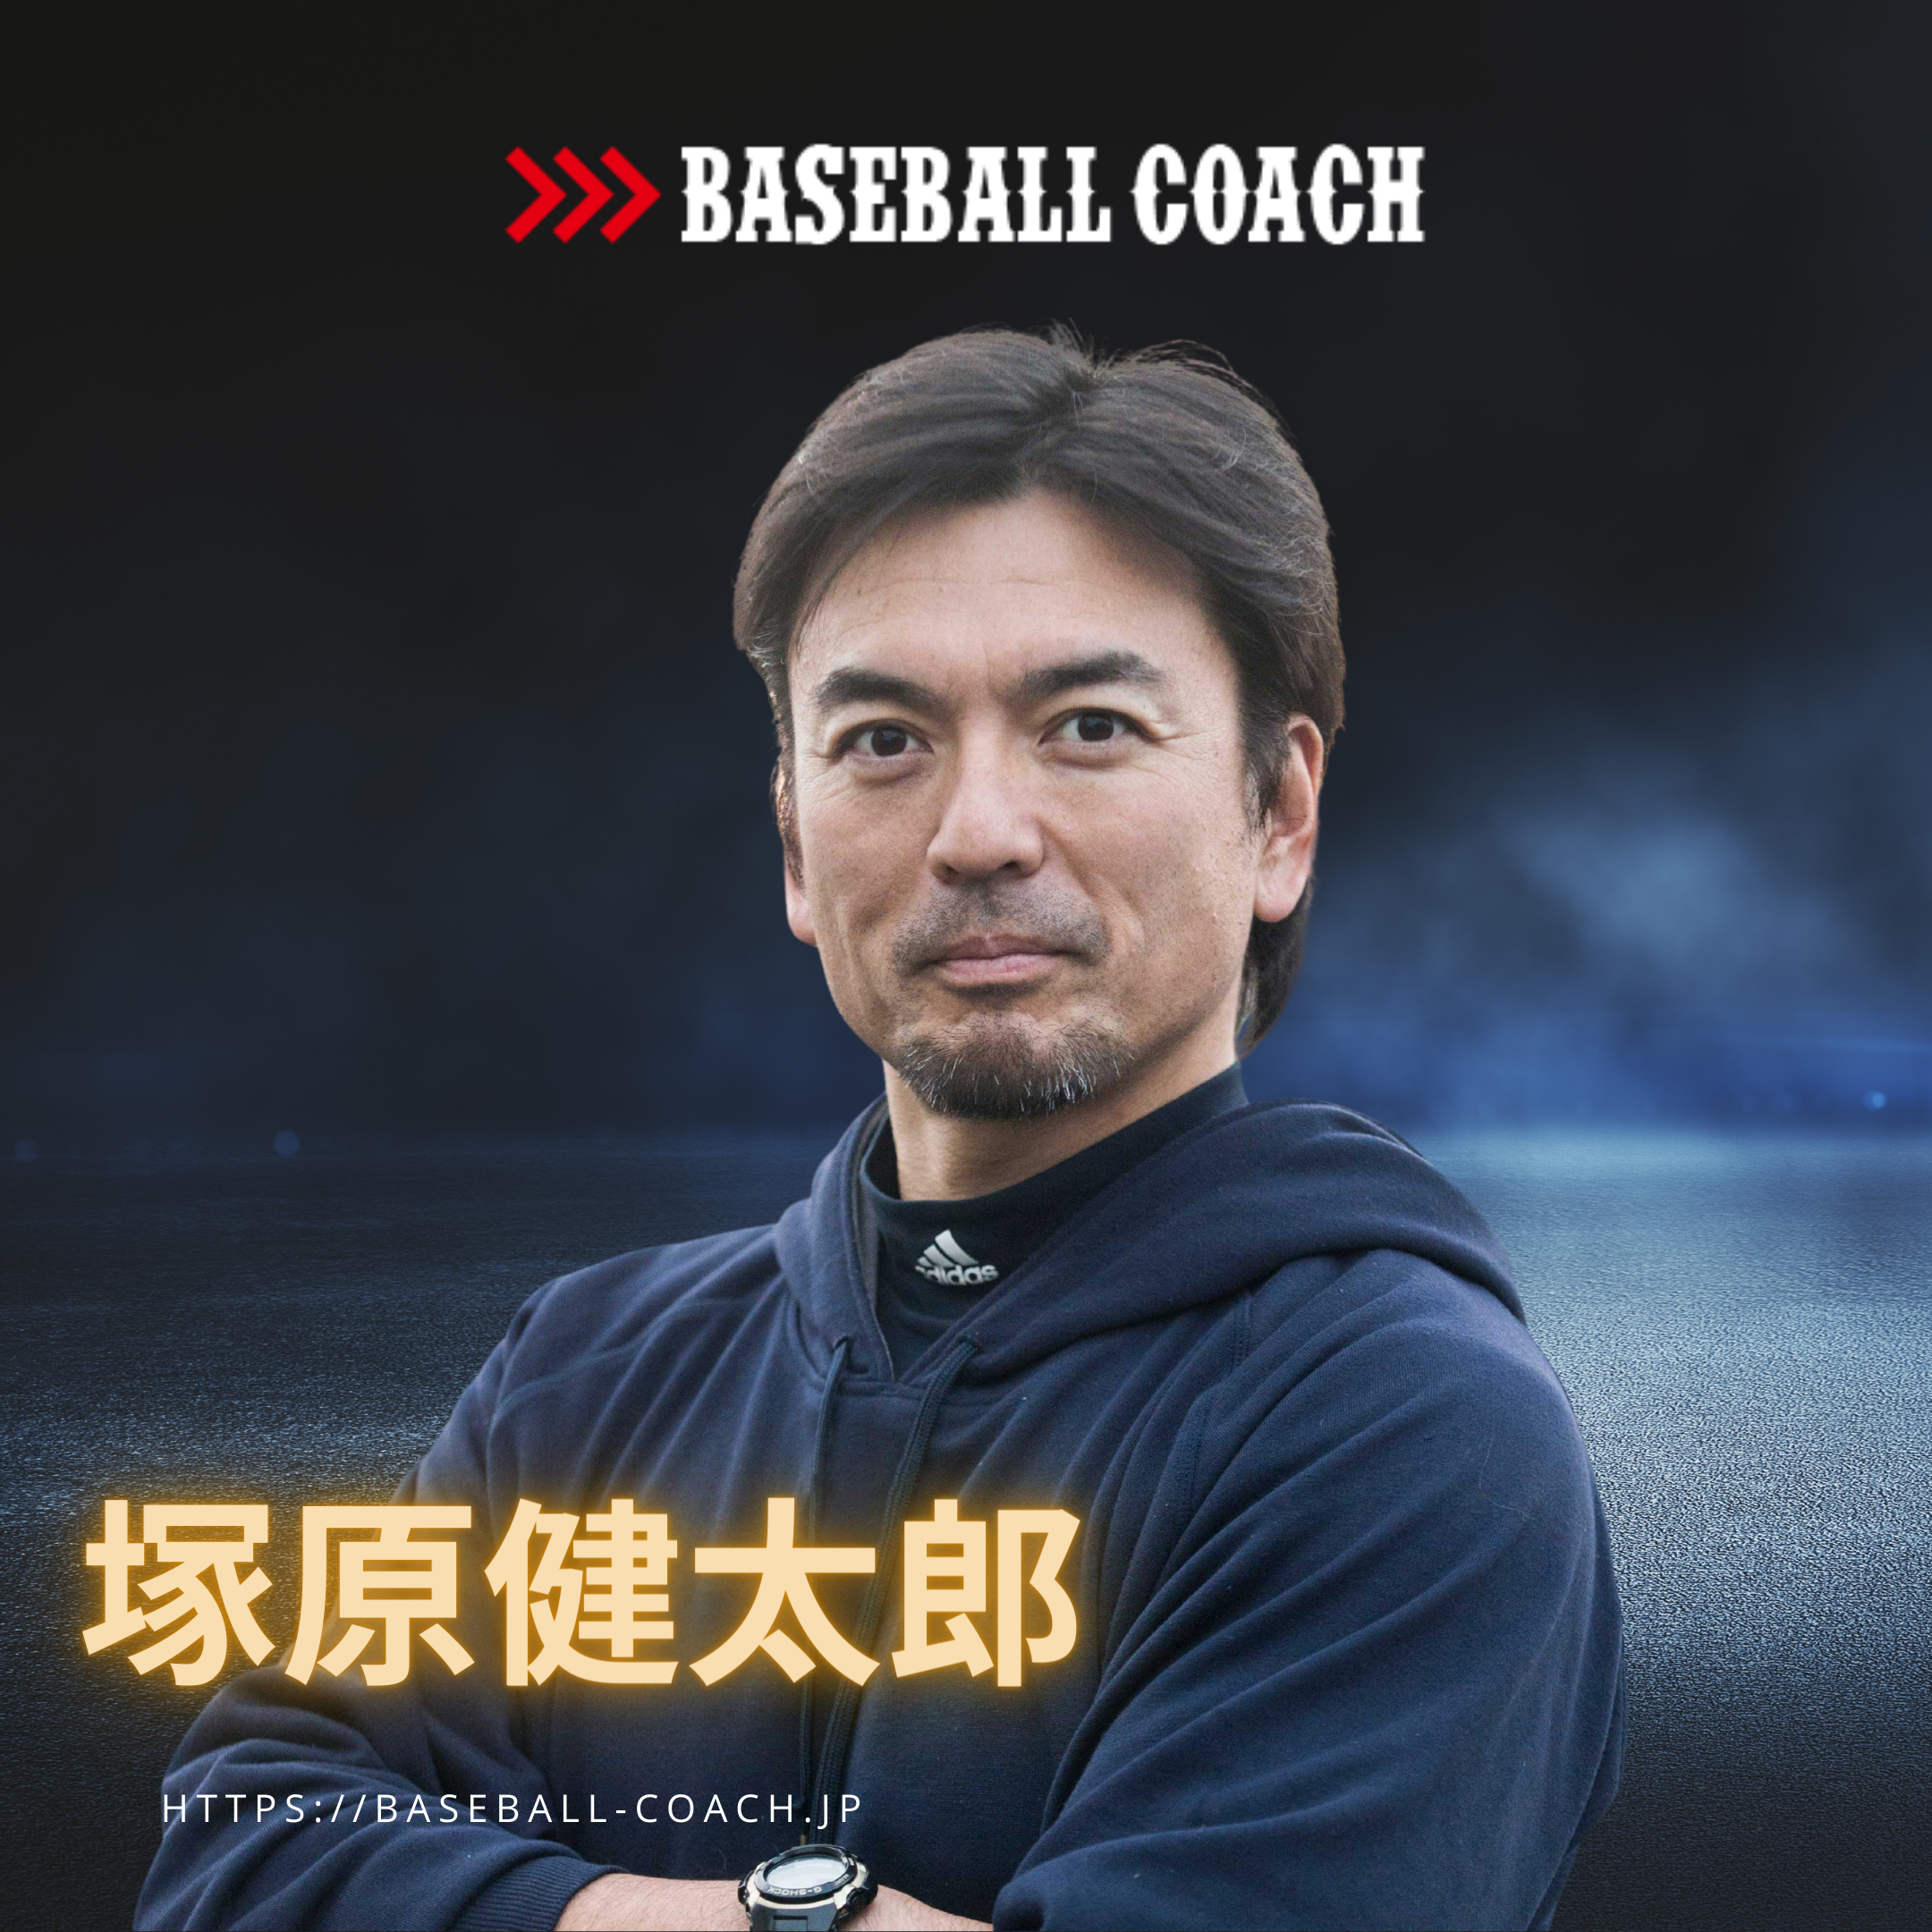 塚原謙太郎 プロフィール 野球教室、コーチの依頼は「BASEBALL COACH